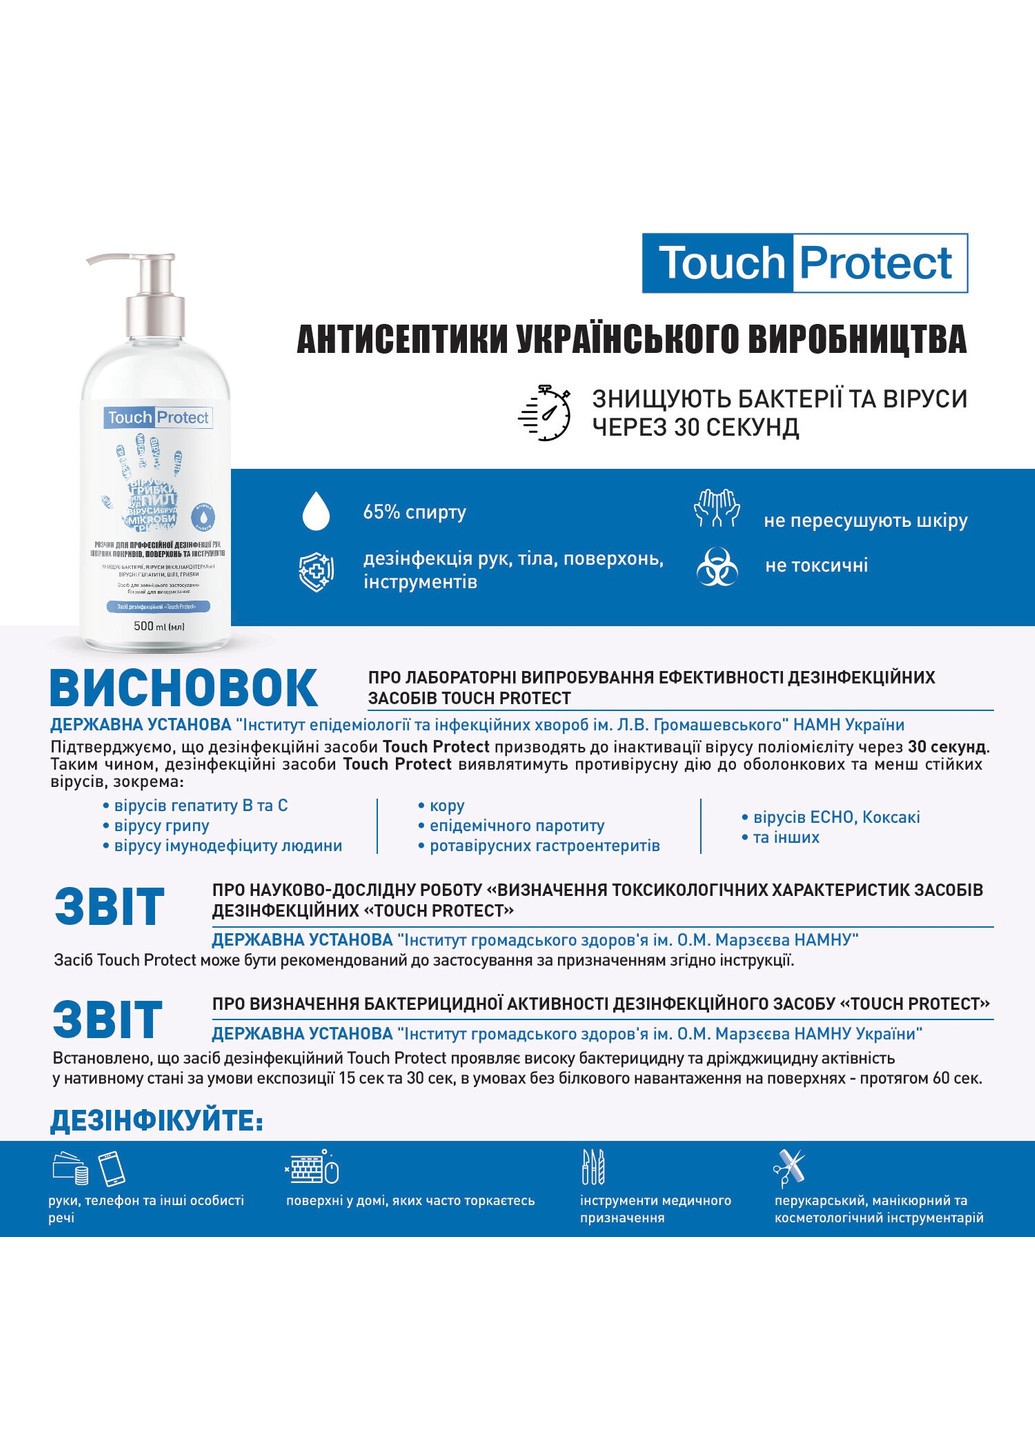 Антисептик раствор для дезинфекции рук, тела, поверхностей и инструментов 500 мл Touch Protect (251847466)